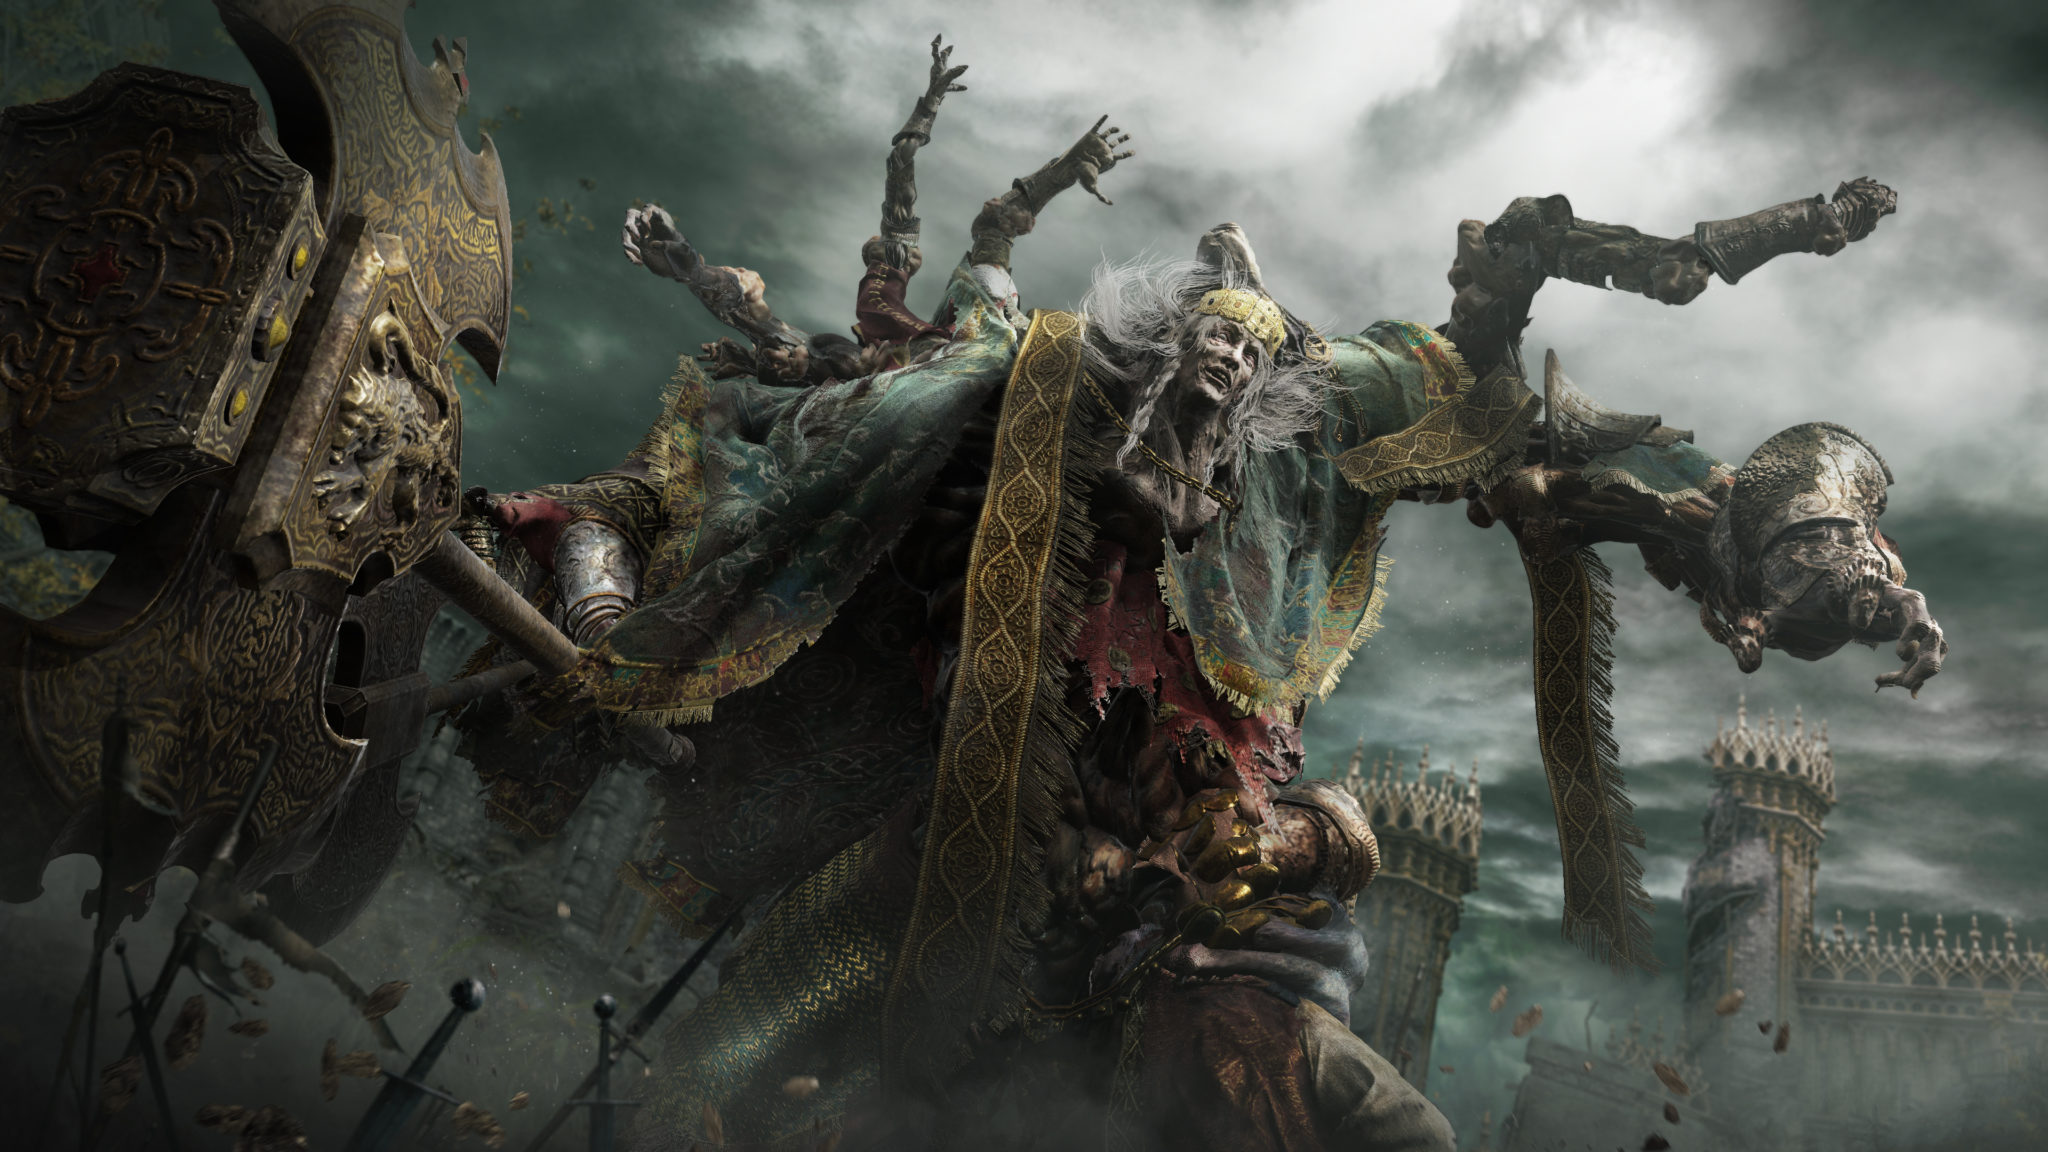 Horizon Forbidden West será lançado ainda em 2021; God of War Ragnarok deve  ser adiado para 2022